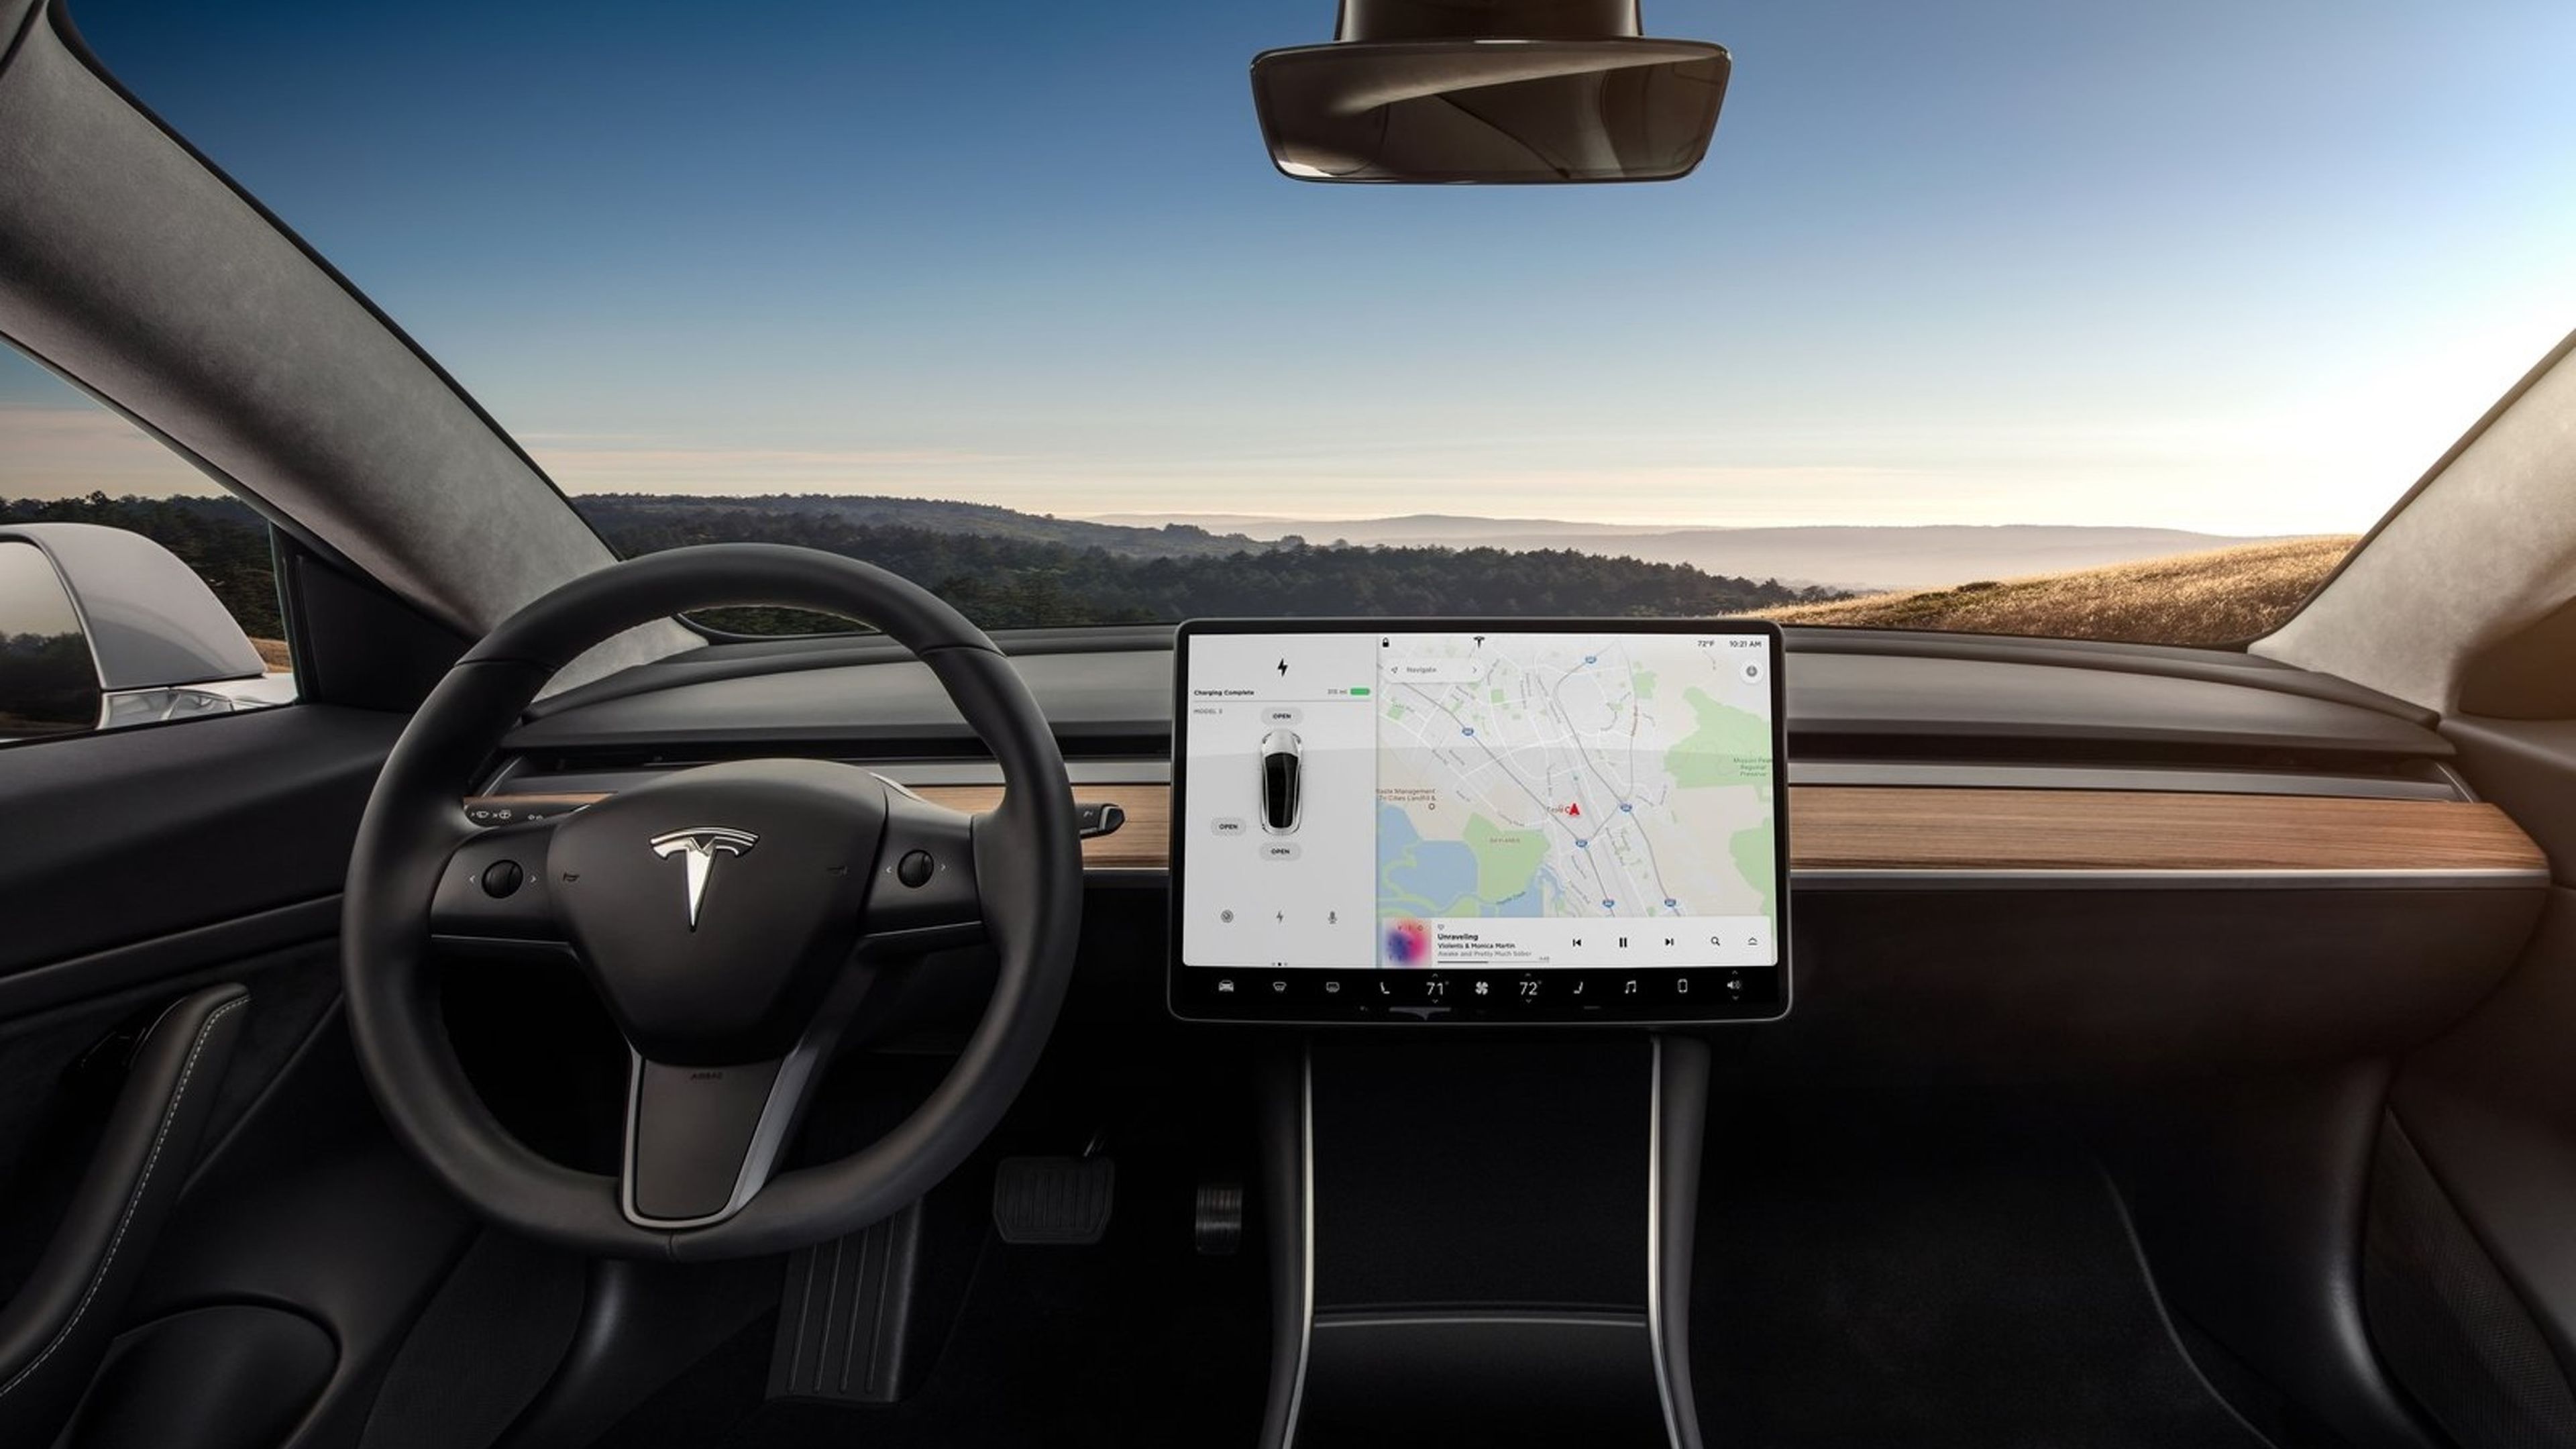 tikTok surrealista vídeo grabado dentro de un Tesla